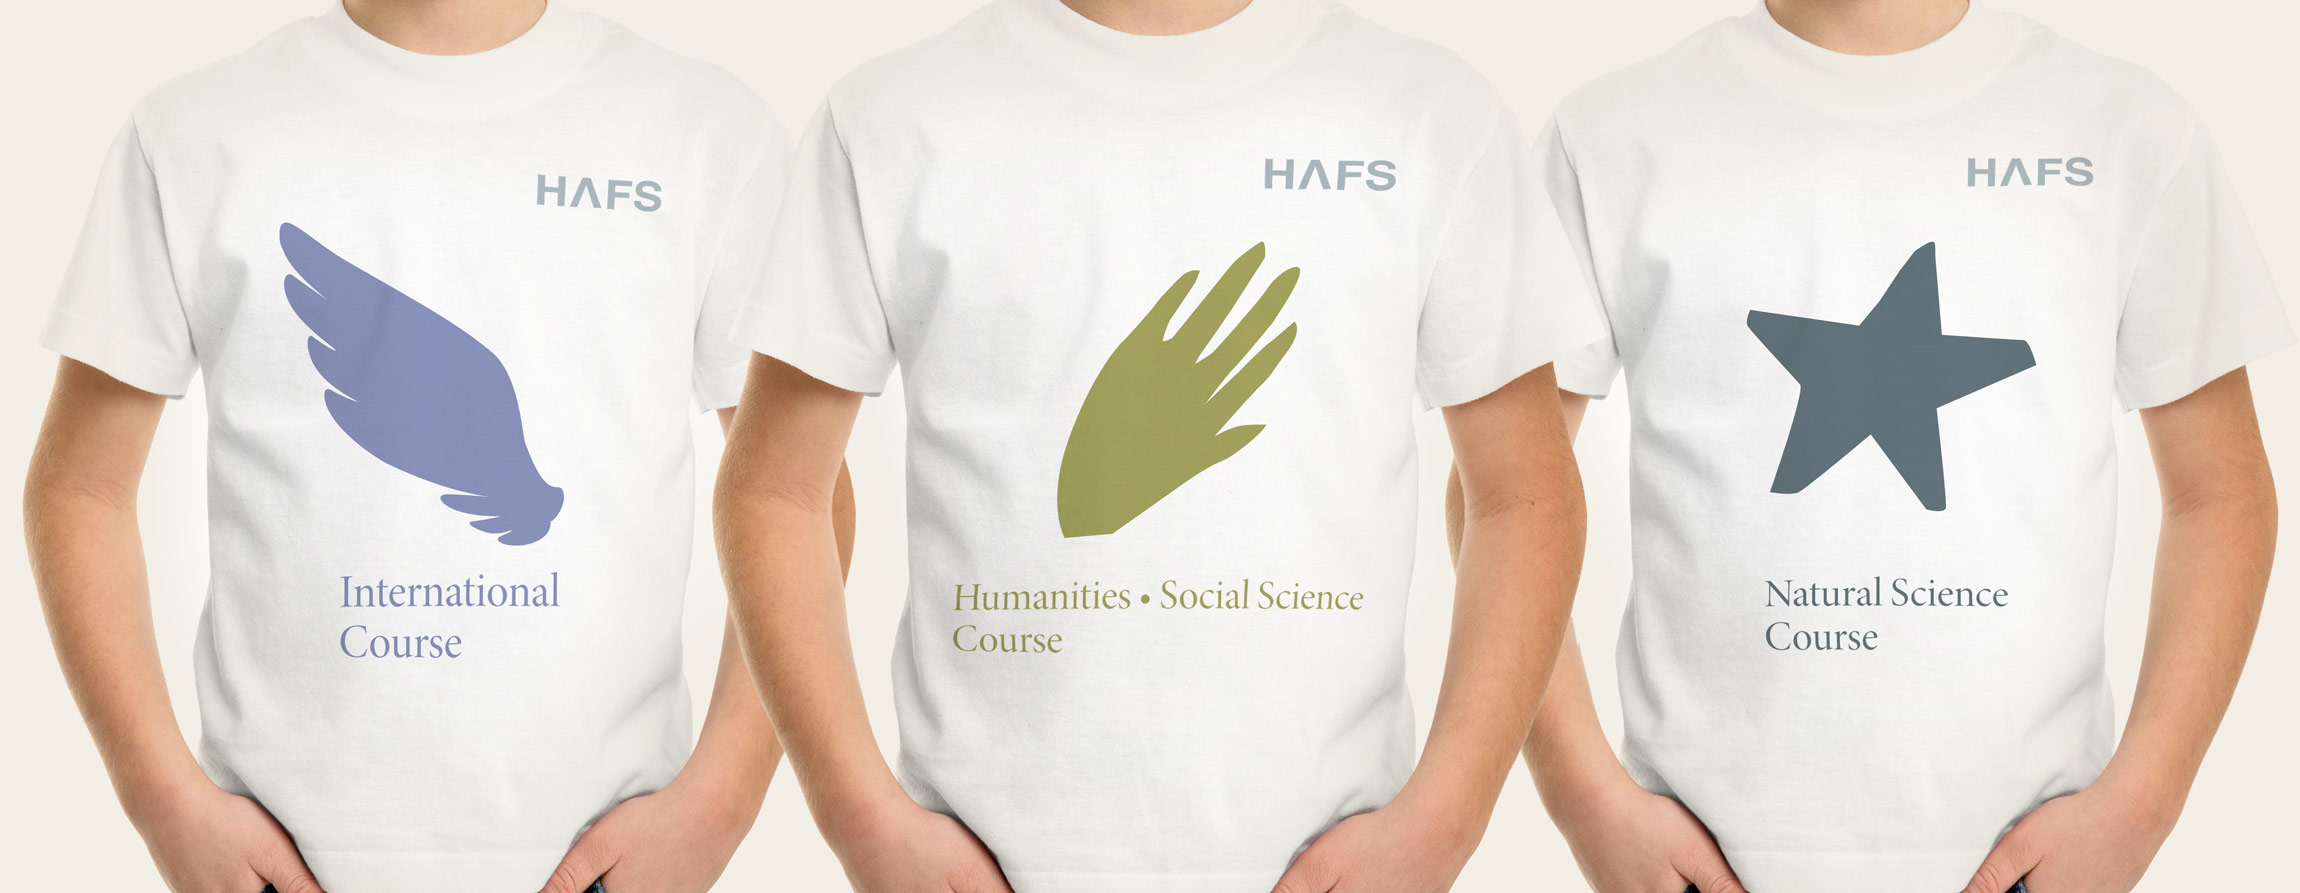 HAFS HAFS Branding & Identity hafs-symbol-3.jpg